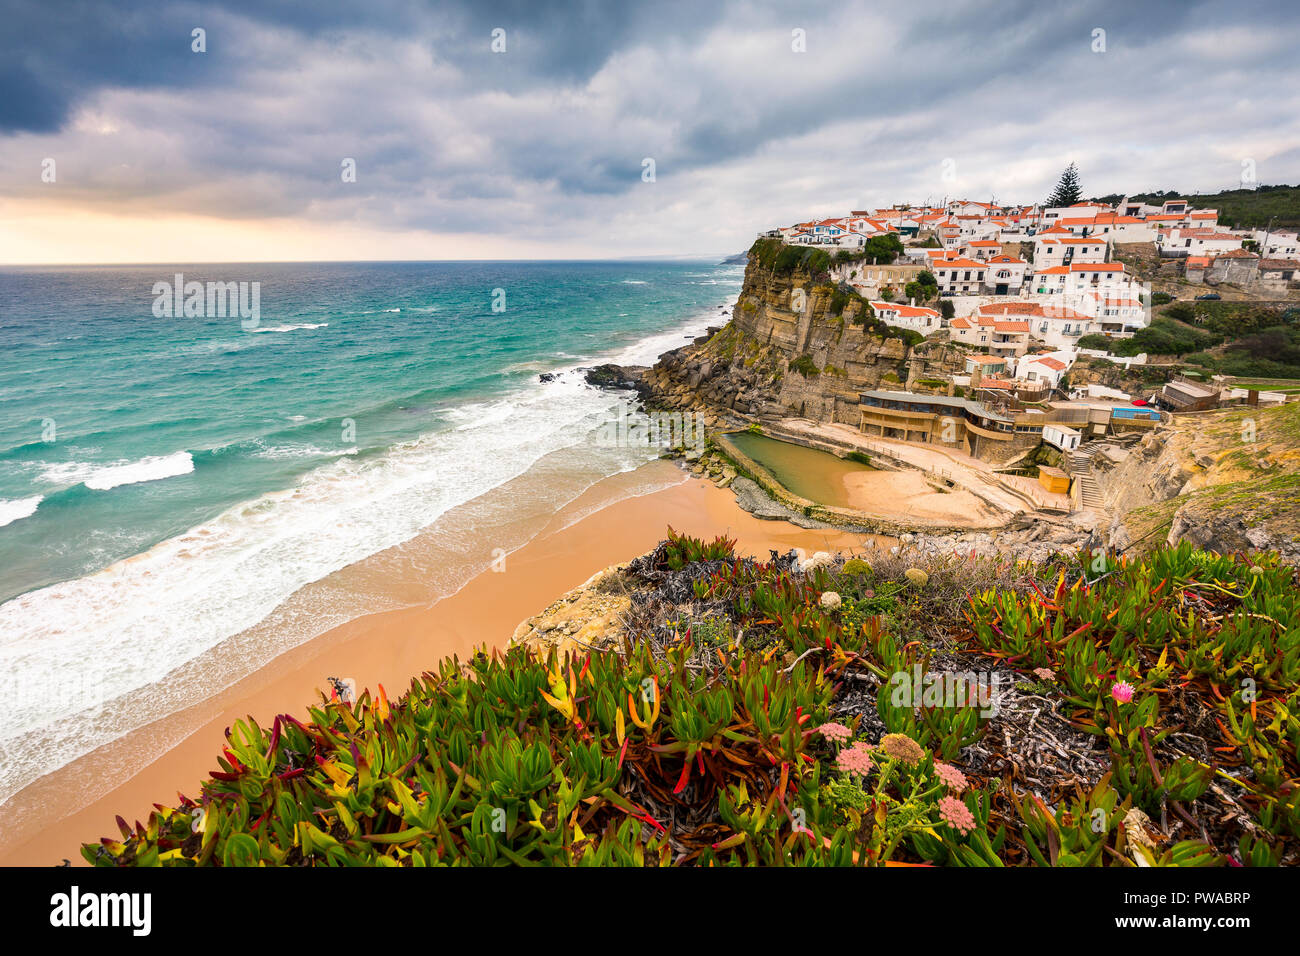 The popular beach town Azenhas do Mar, near Lisbon, Portugal Stock Photo